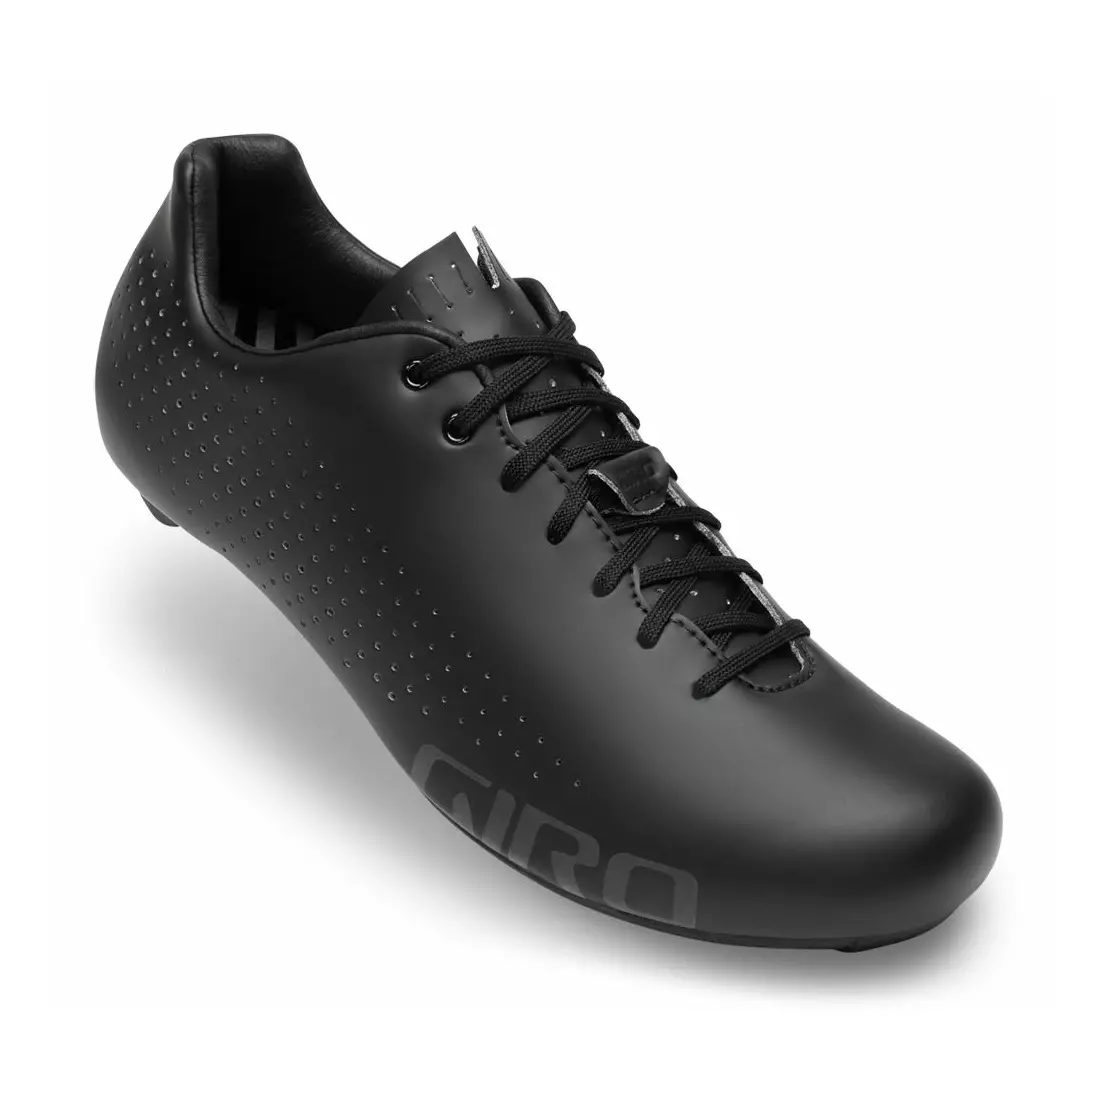 GIRO pánska cyklistická obuv EMPIRE black GR-7110729